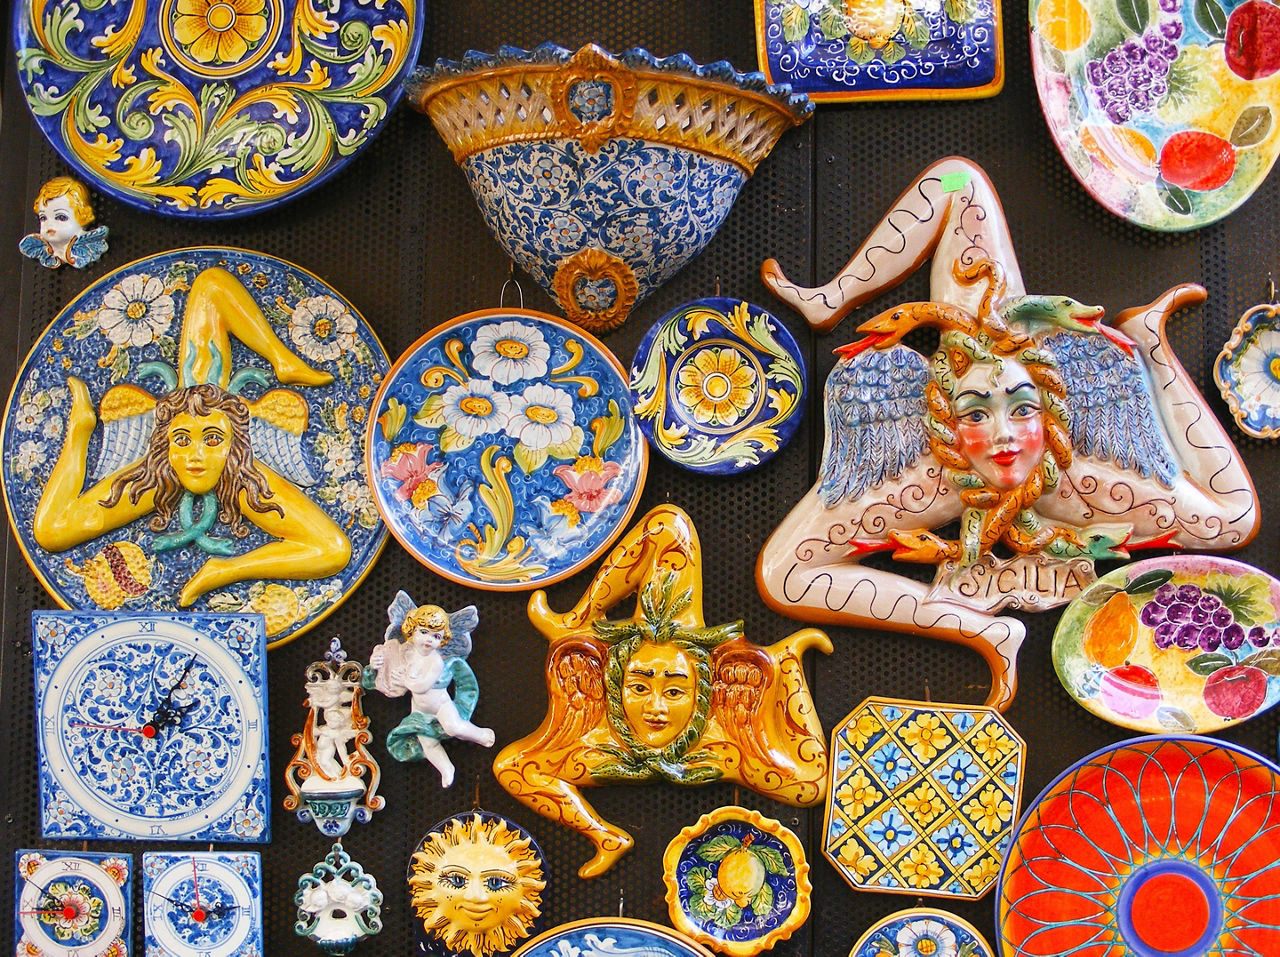 Sicily (Messina), Italy, Assorted Ceramic Souvenirs